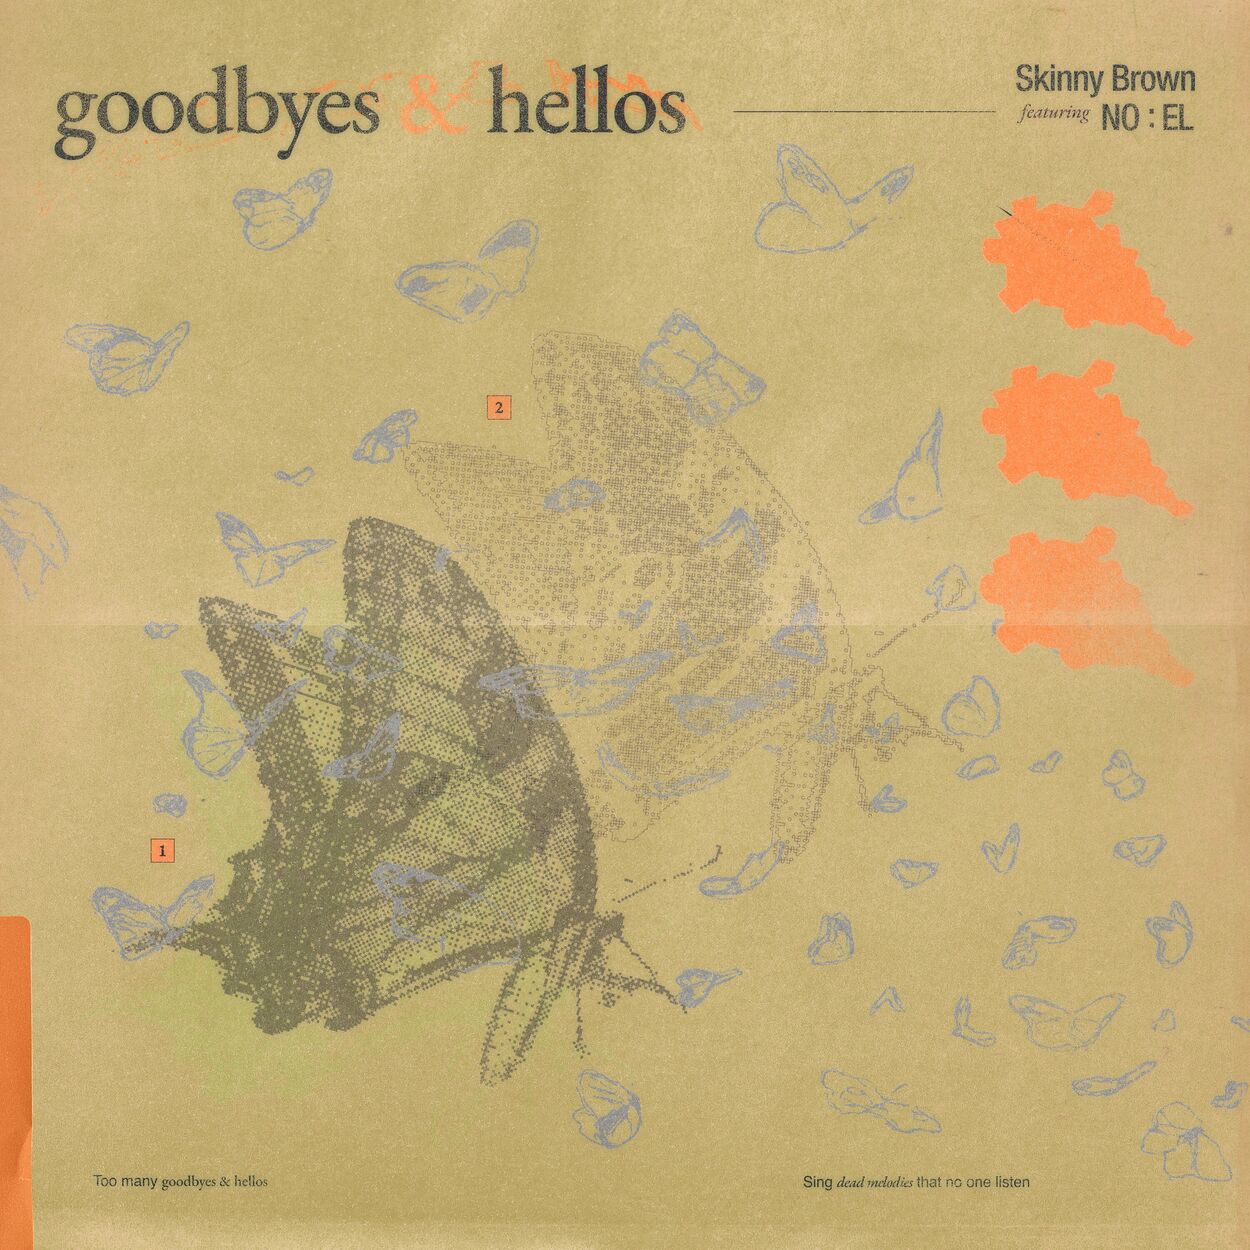 Skinny Brown – Goodbyes & Hellos – Single